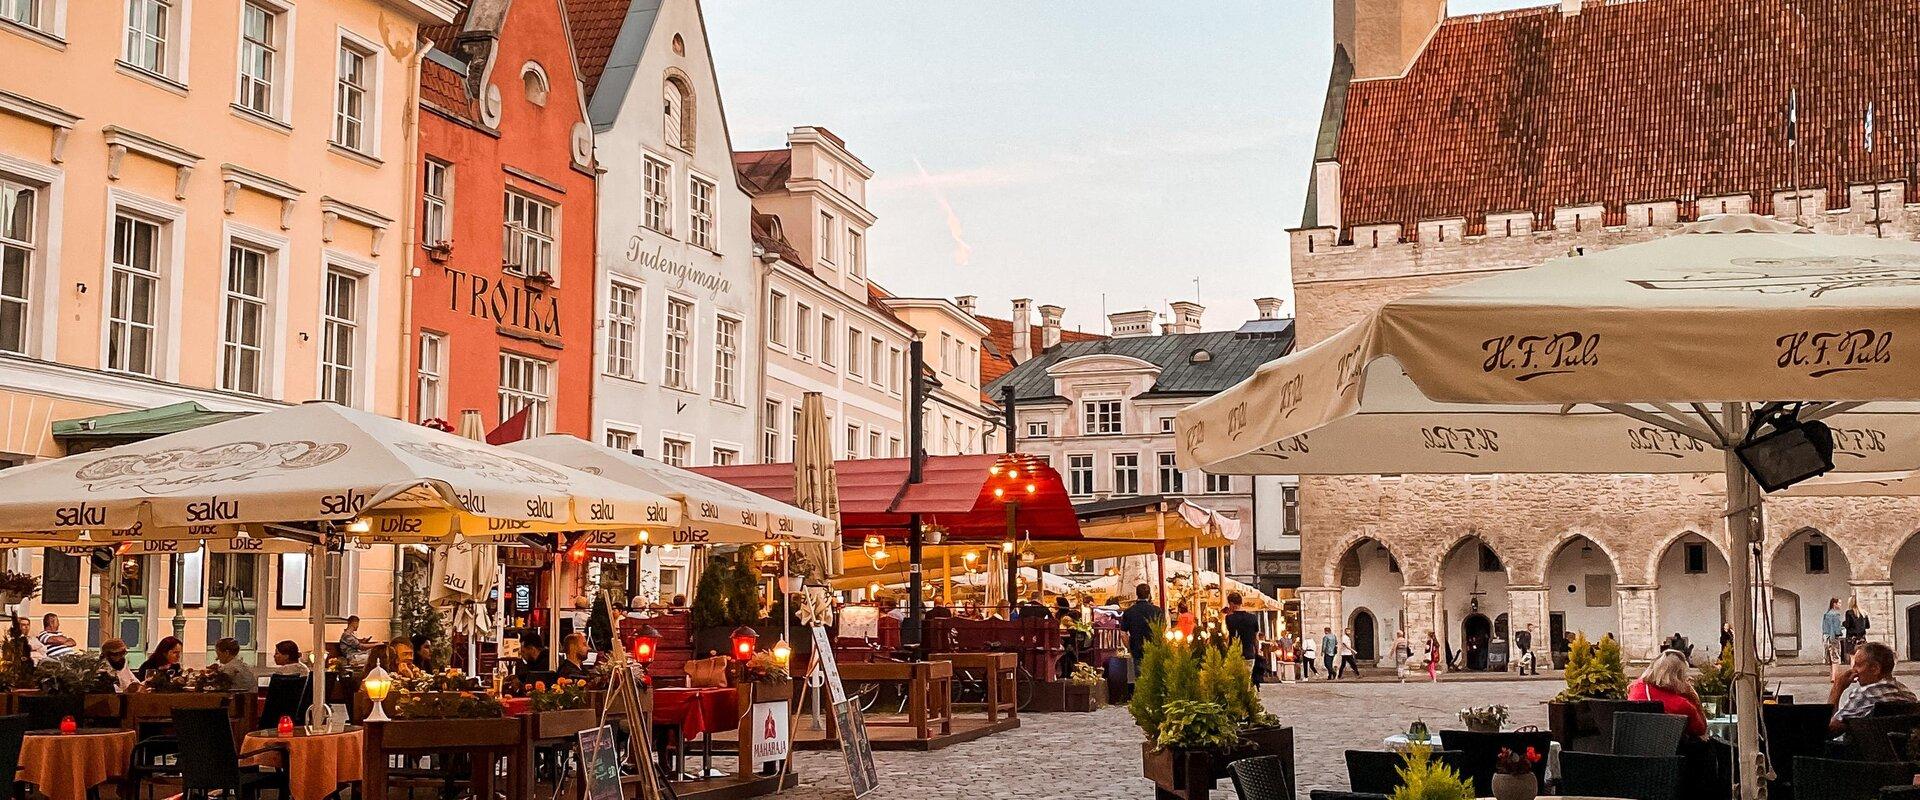 Der Rathausplatz diente von jeher als urtümlicher Marktplatz und als Zentrum der mittelalterlichen Hansestadt. Im Übergang vom 13. zum 14. Jahrhundert